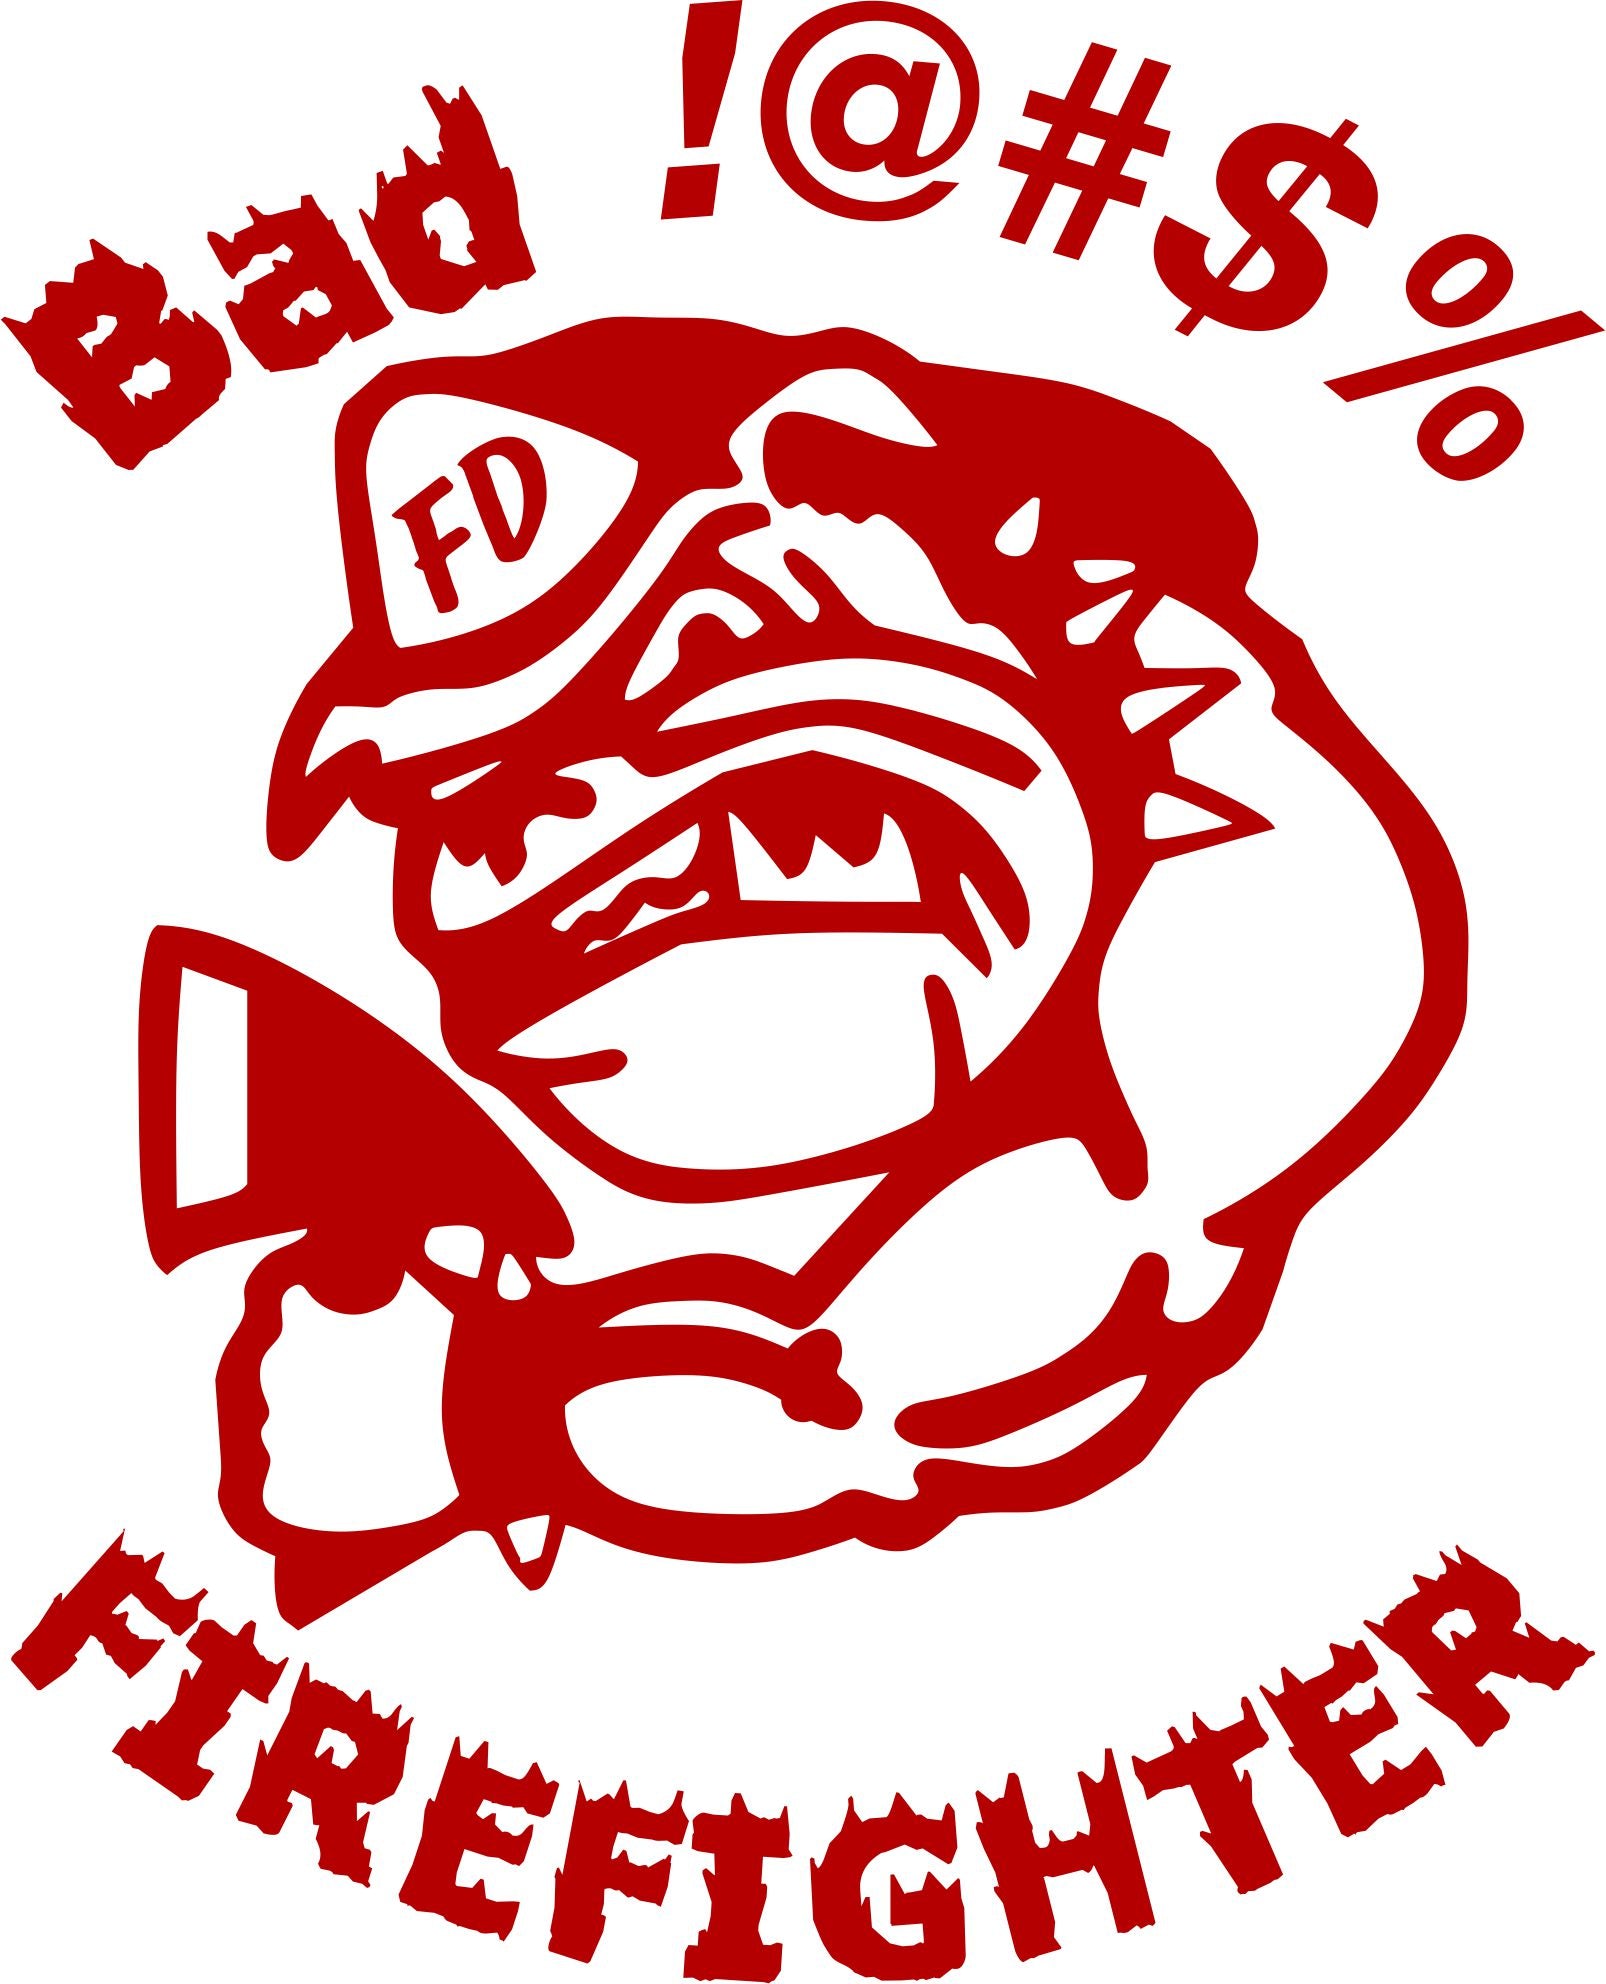 Bad Ass Firefighter Decal - Powercall Sirens LLC